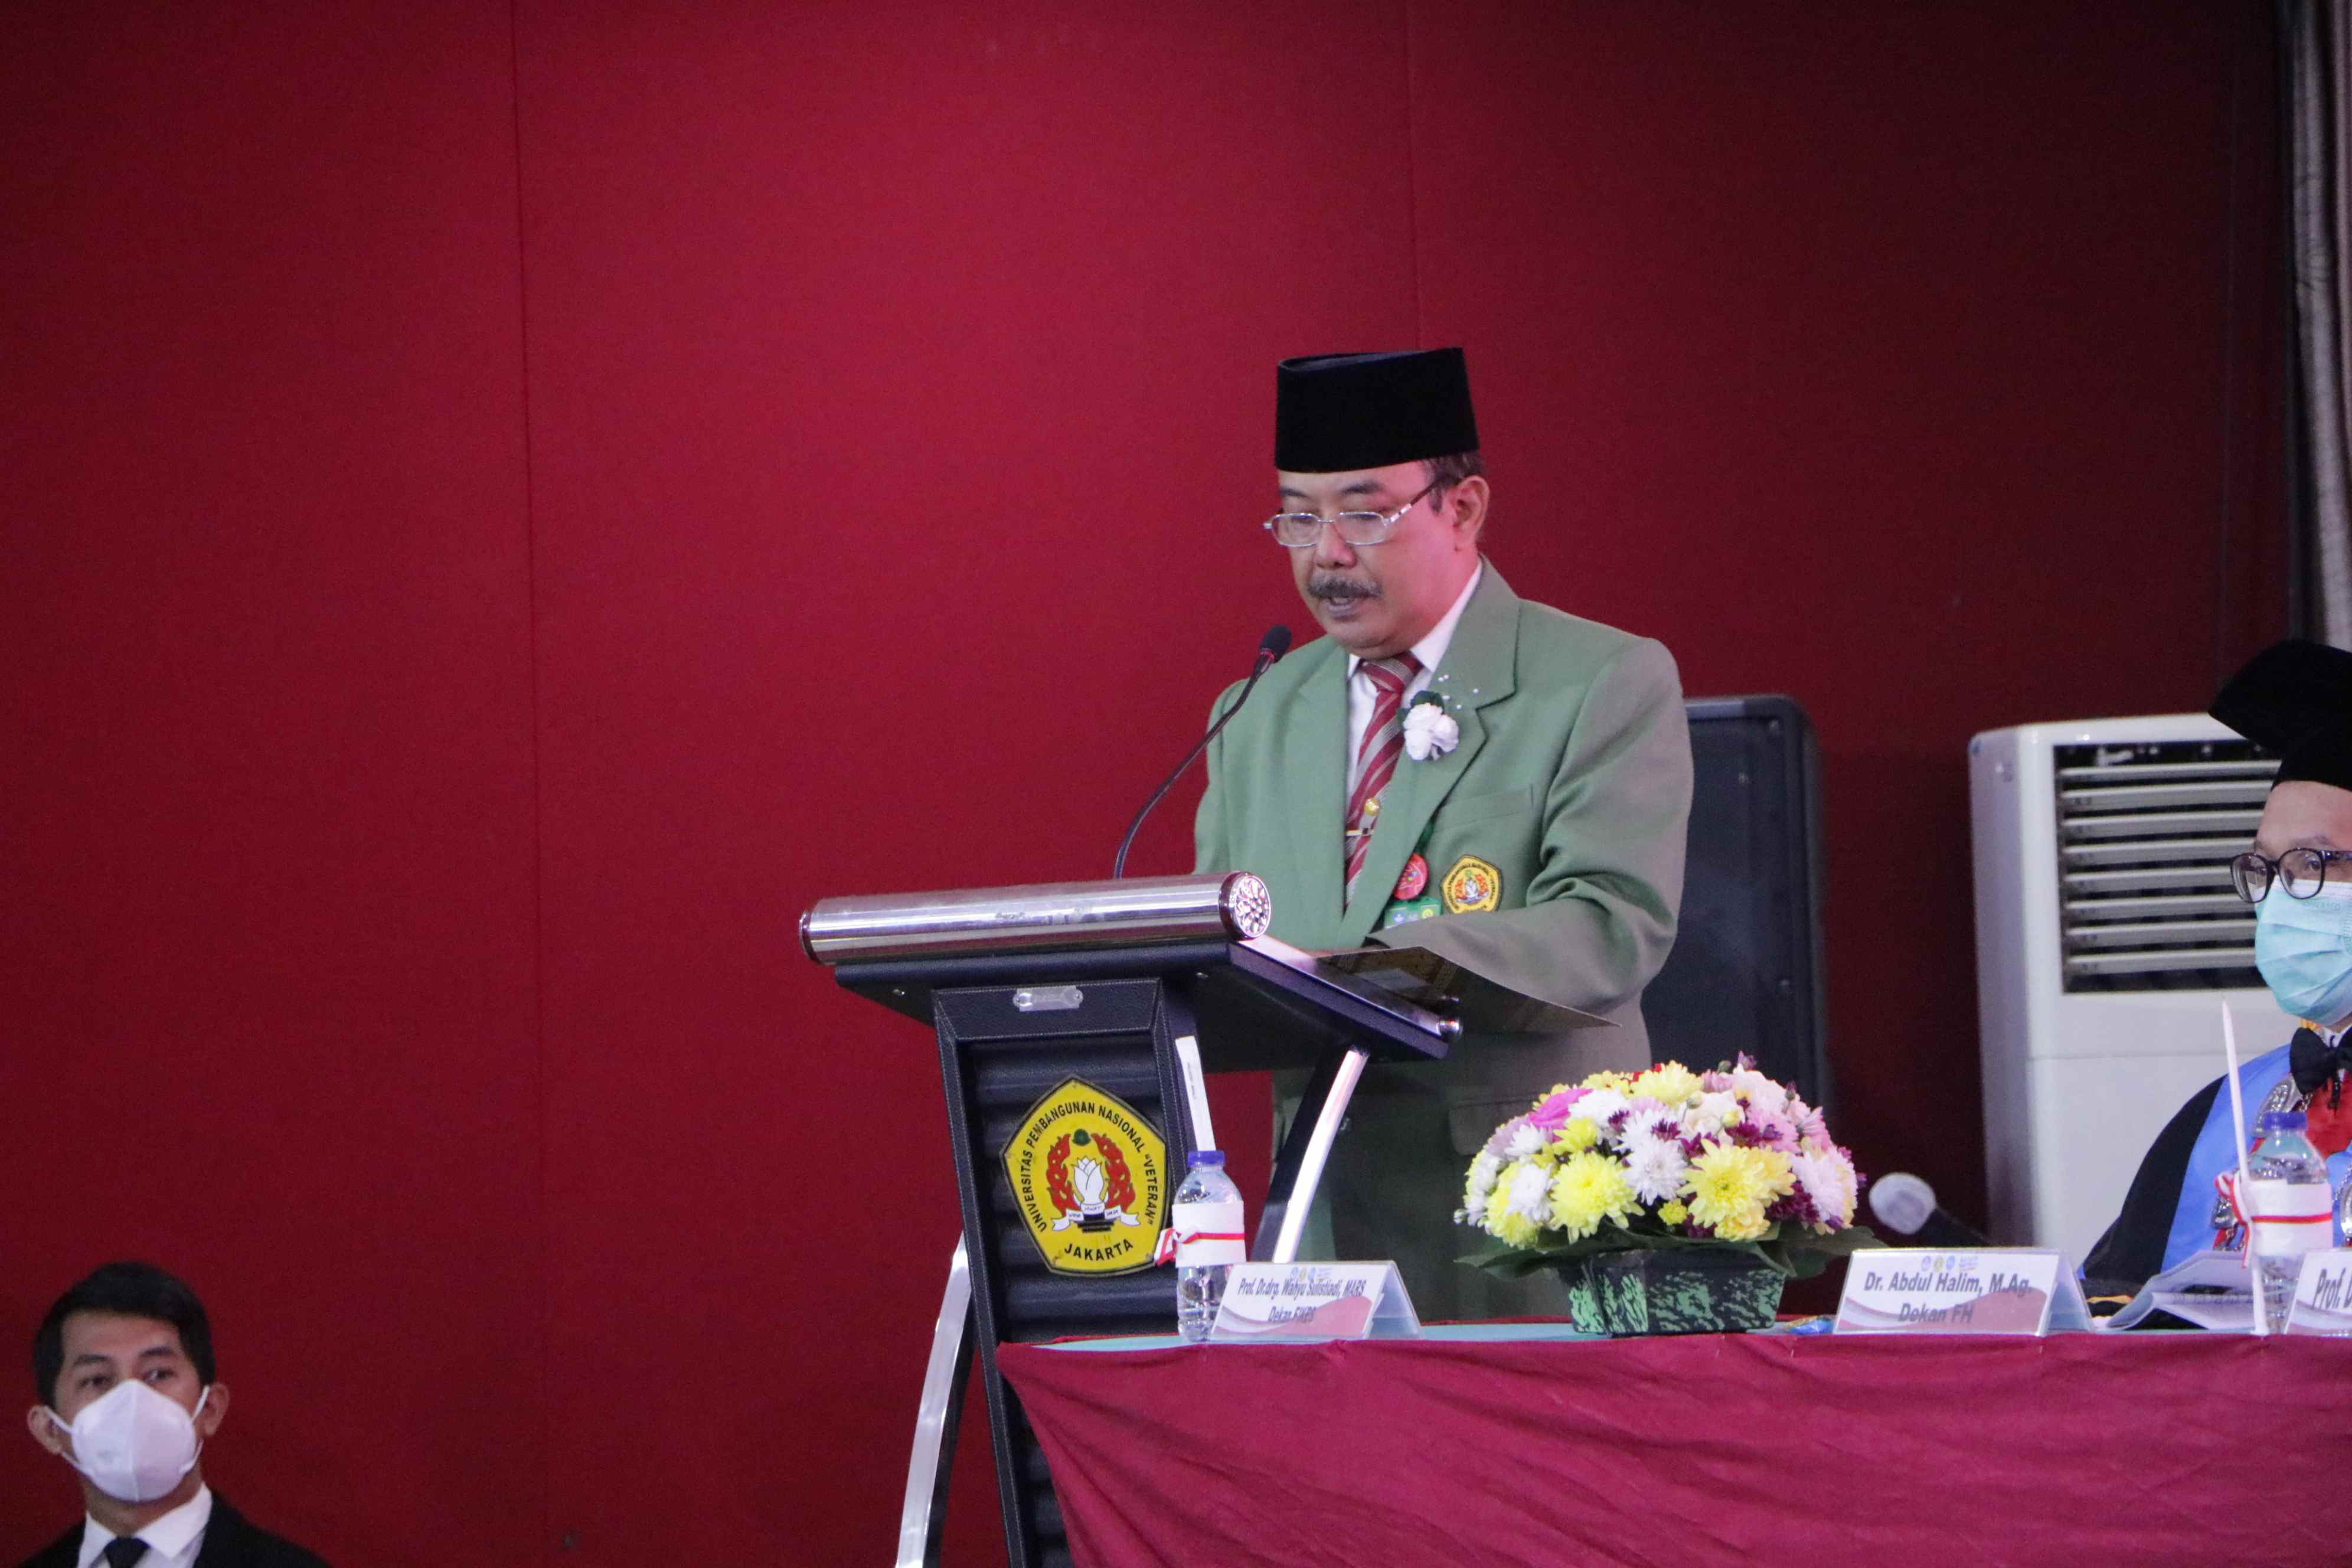 Pengukuhan Prof Dr Wicipto Setiadi SH MH Guru Besar bidang Ilmu Hukum Fakultas Hukum Universitas Pembangunan Nasional Veteran Jakarta (300)